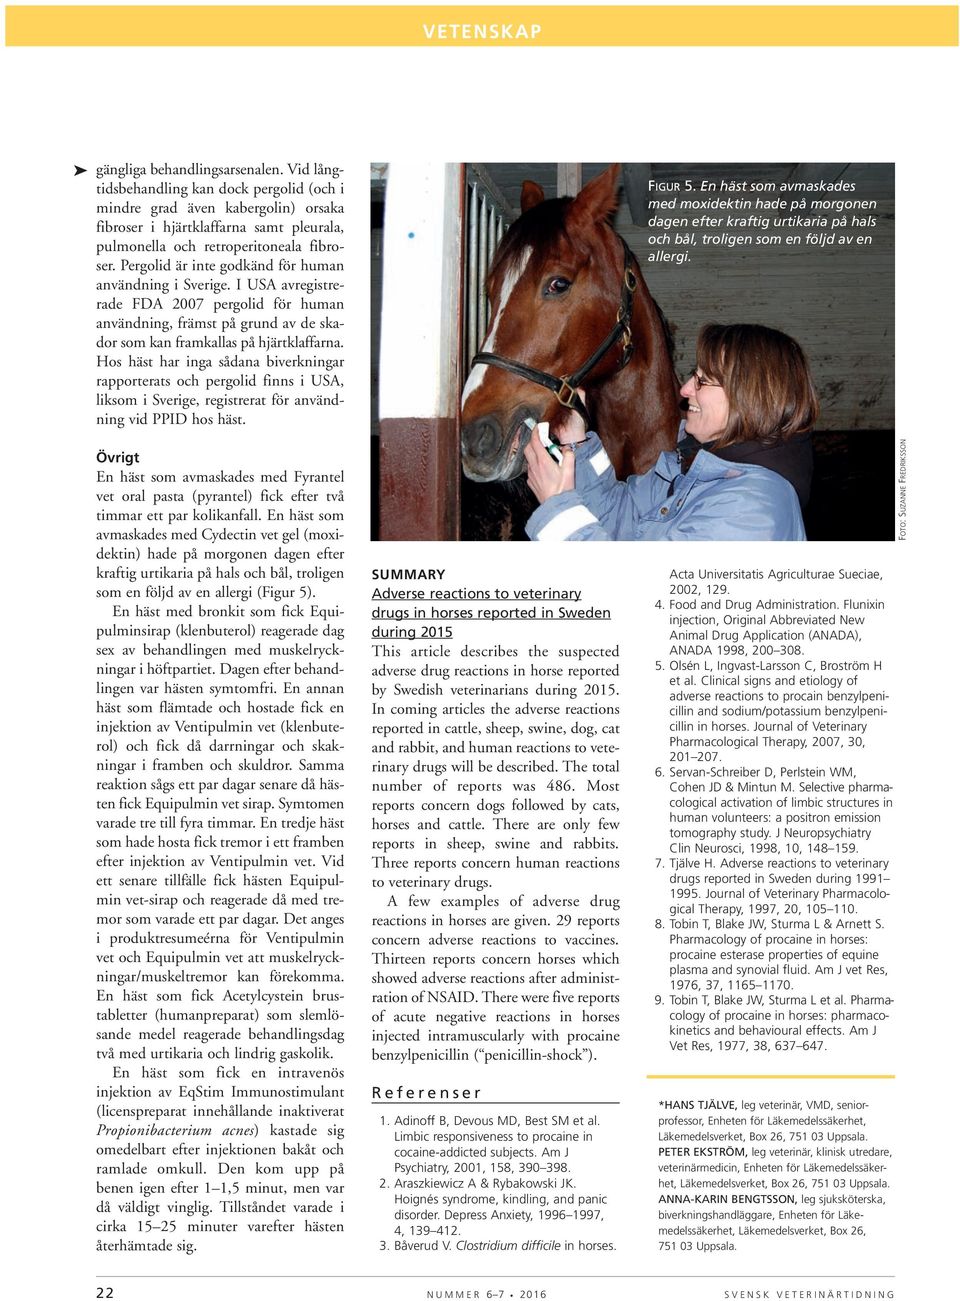 Hos häst har inga sådana biverkningar rapporterats och pergolid finns i USA, liksom i Sverige, registrerat för användning vid PPID hos häst.